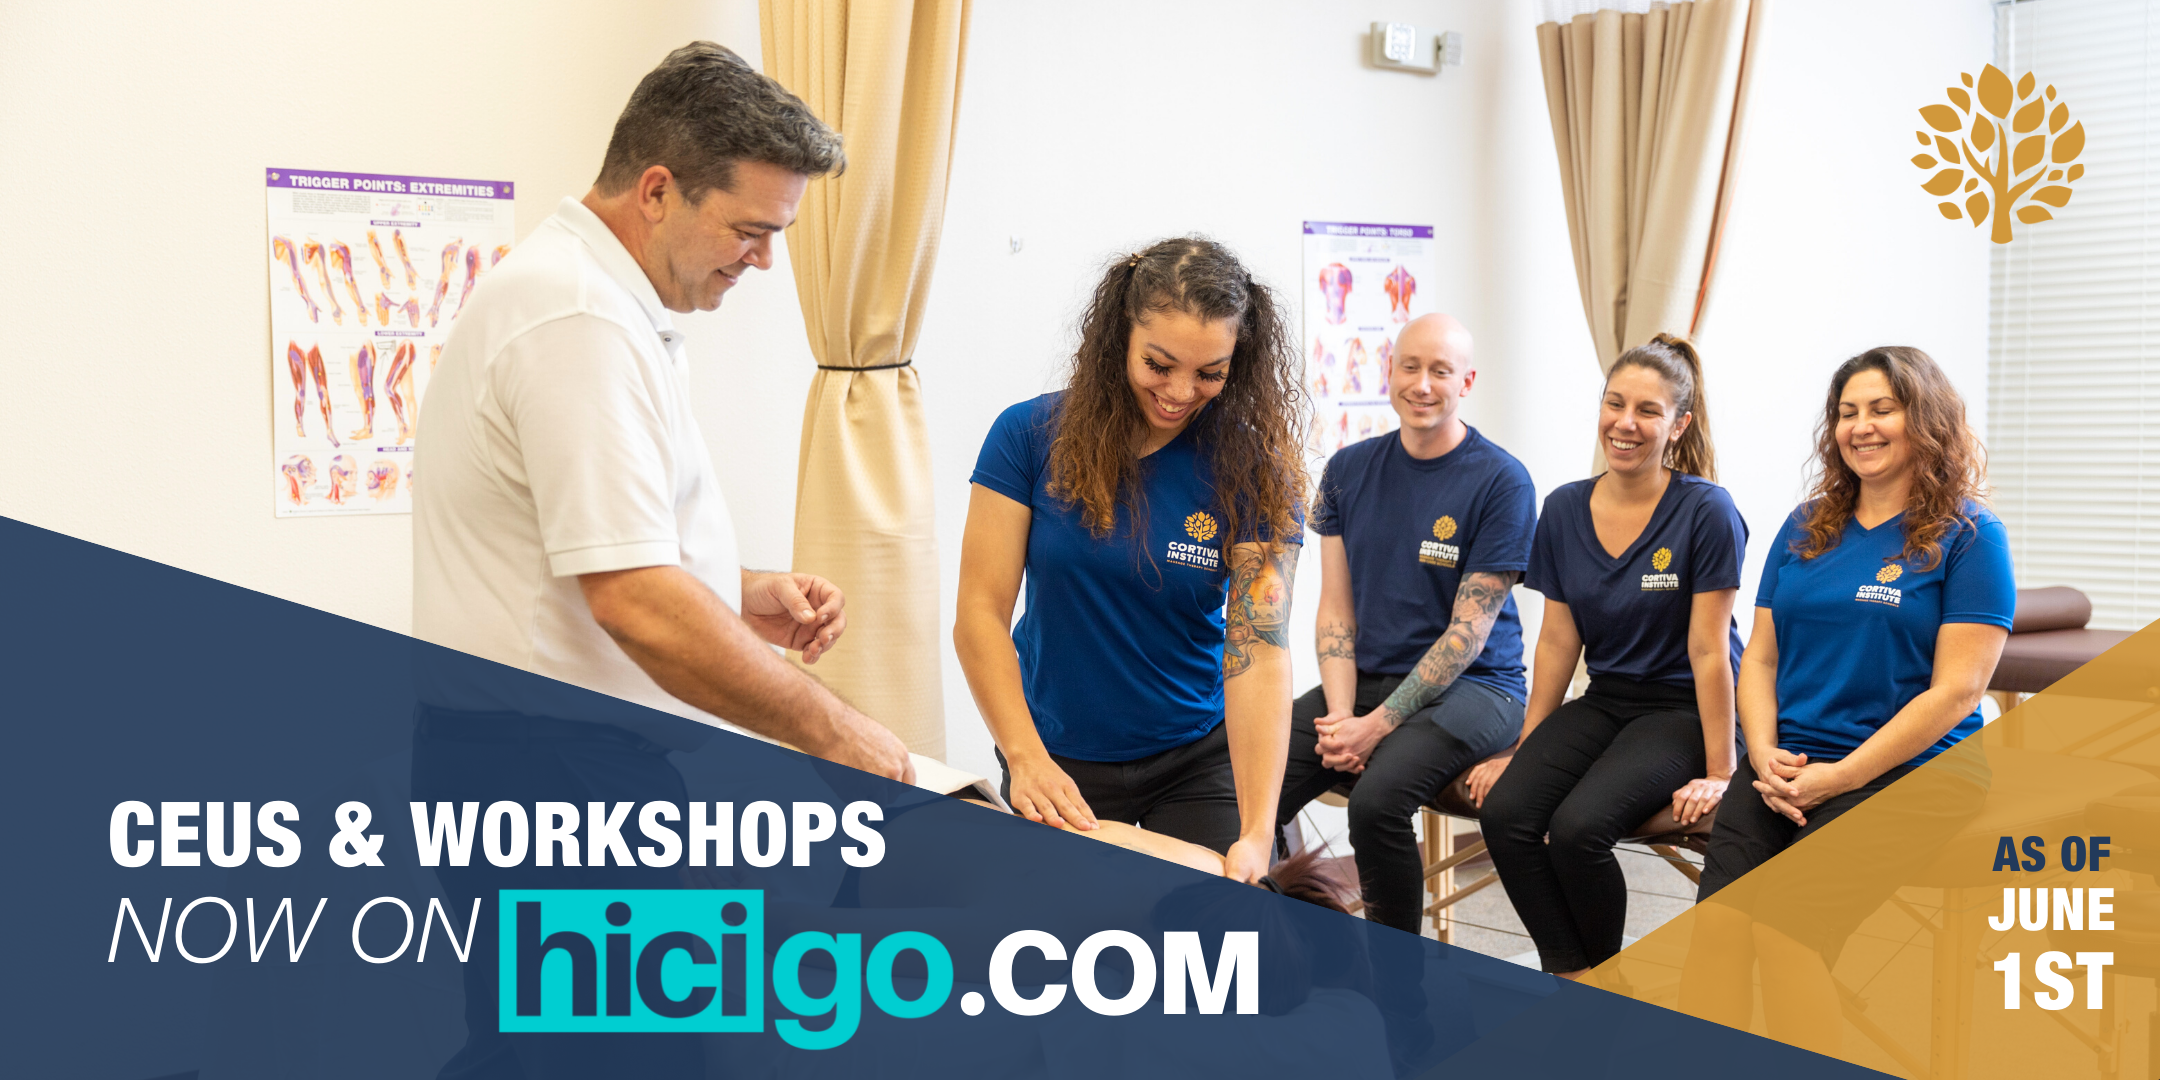 Cortiva CEUs & Workshops now offered on hicigo.com